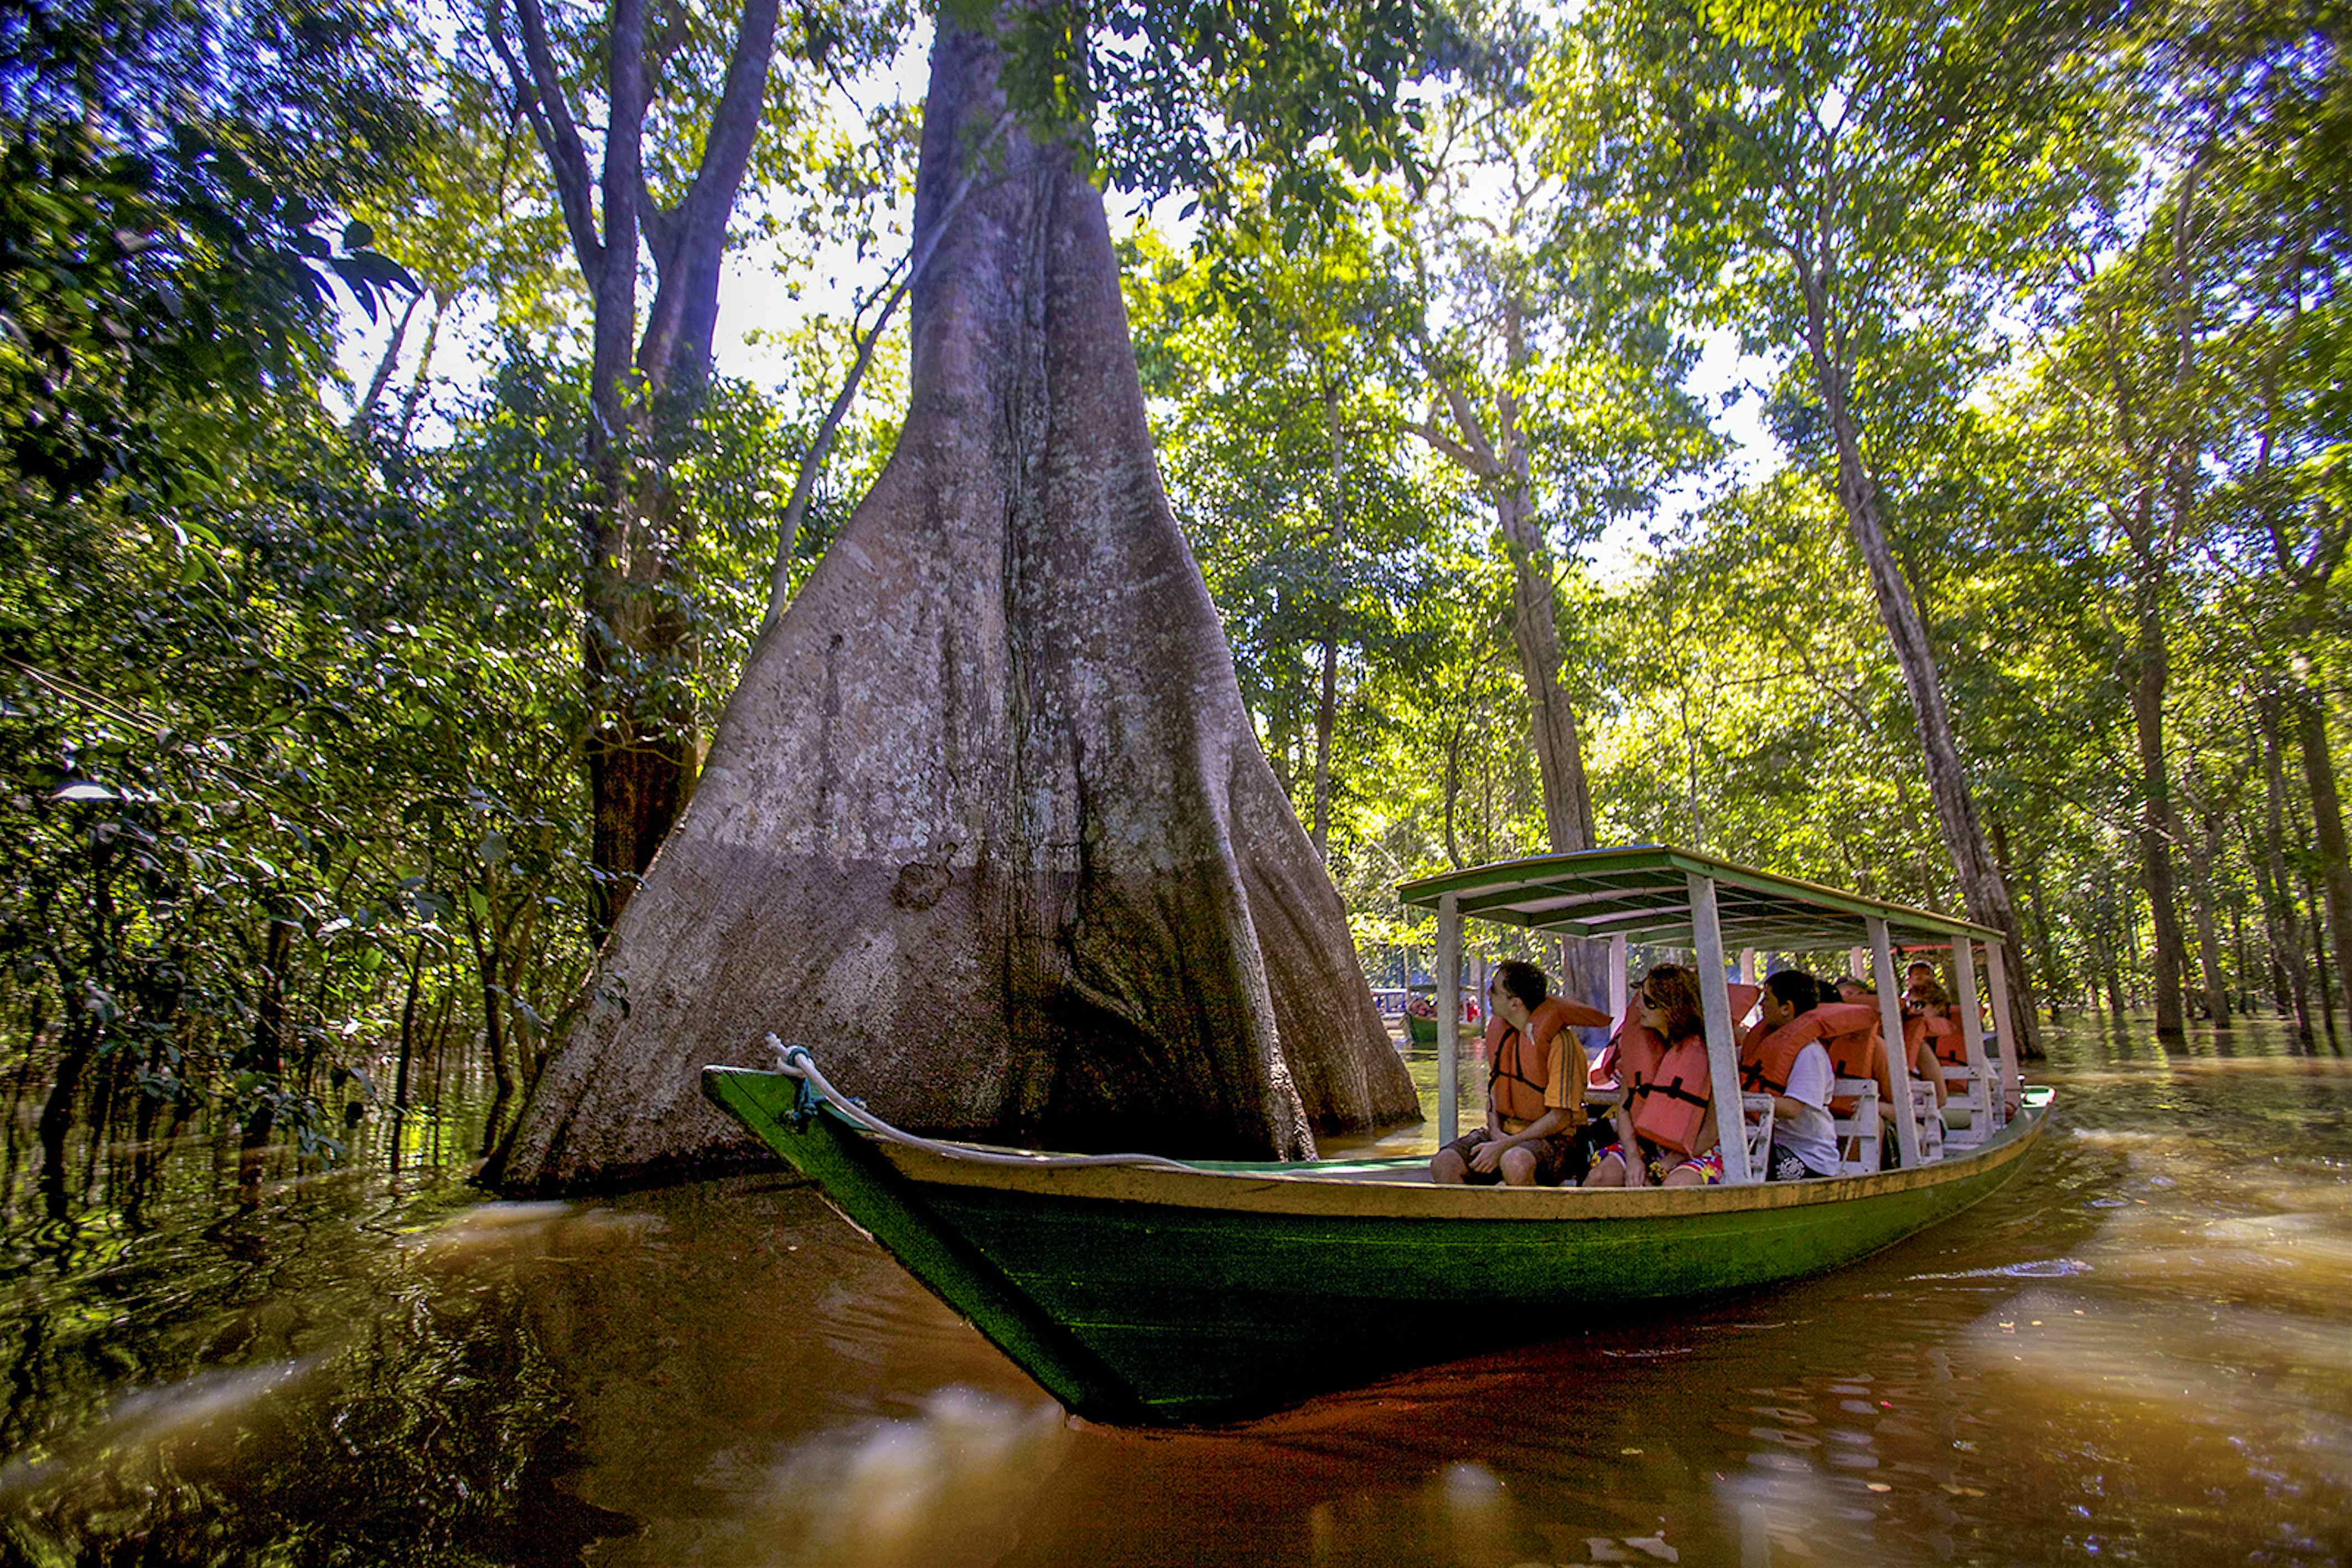 amazon rainforest tour manaus